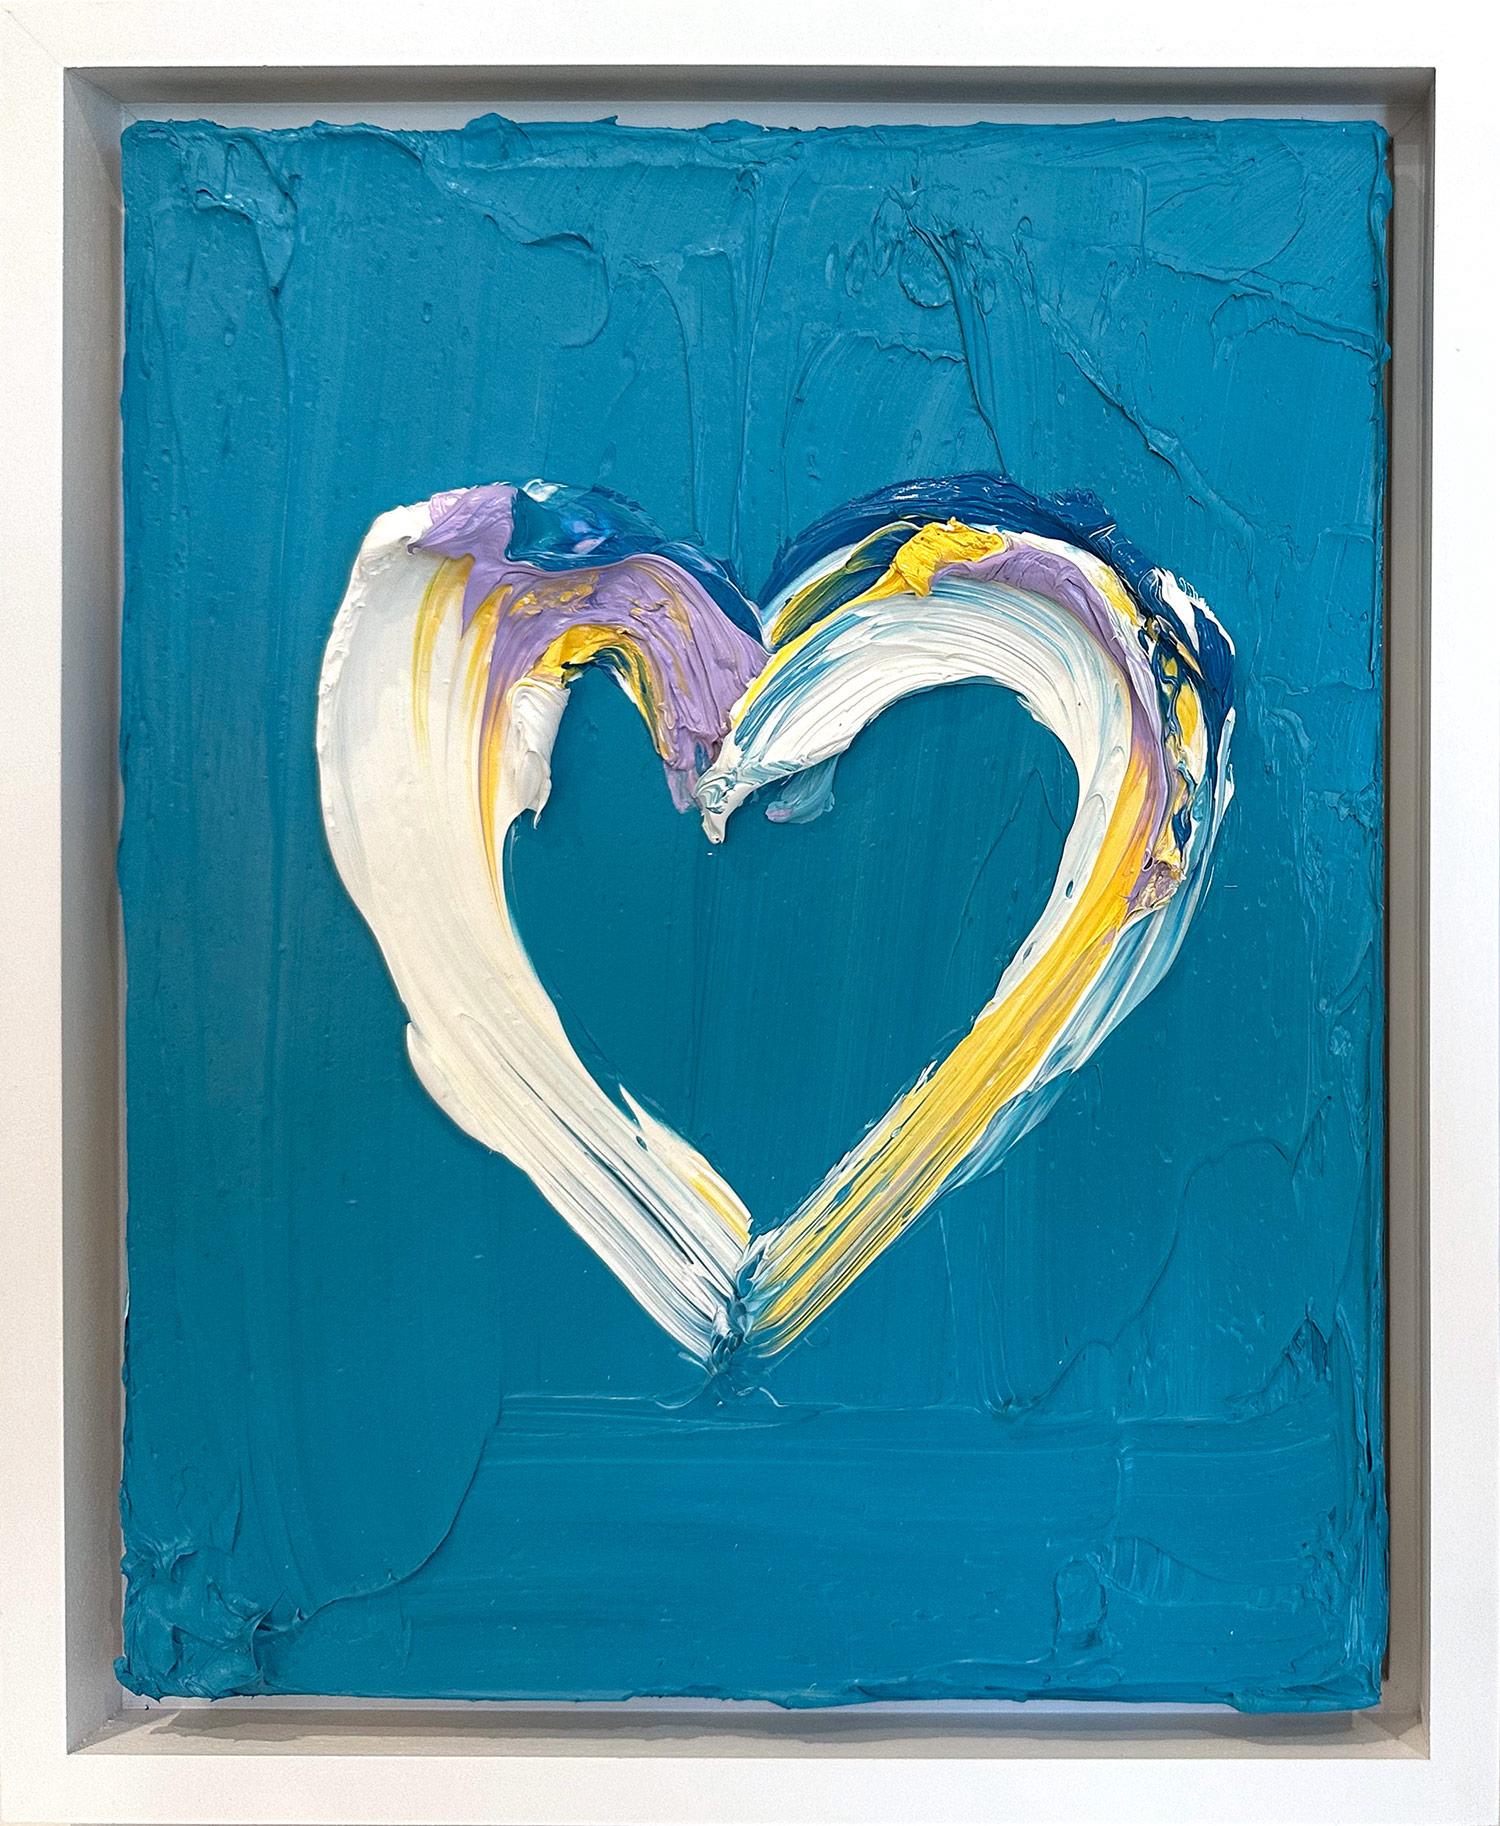 Abstract Painting Cindy Shaoul - "My Playful Heart" Peinture à l'huile contemporaine sur Wood Wood Encadrement flottant blanc